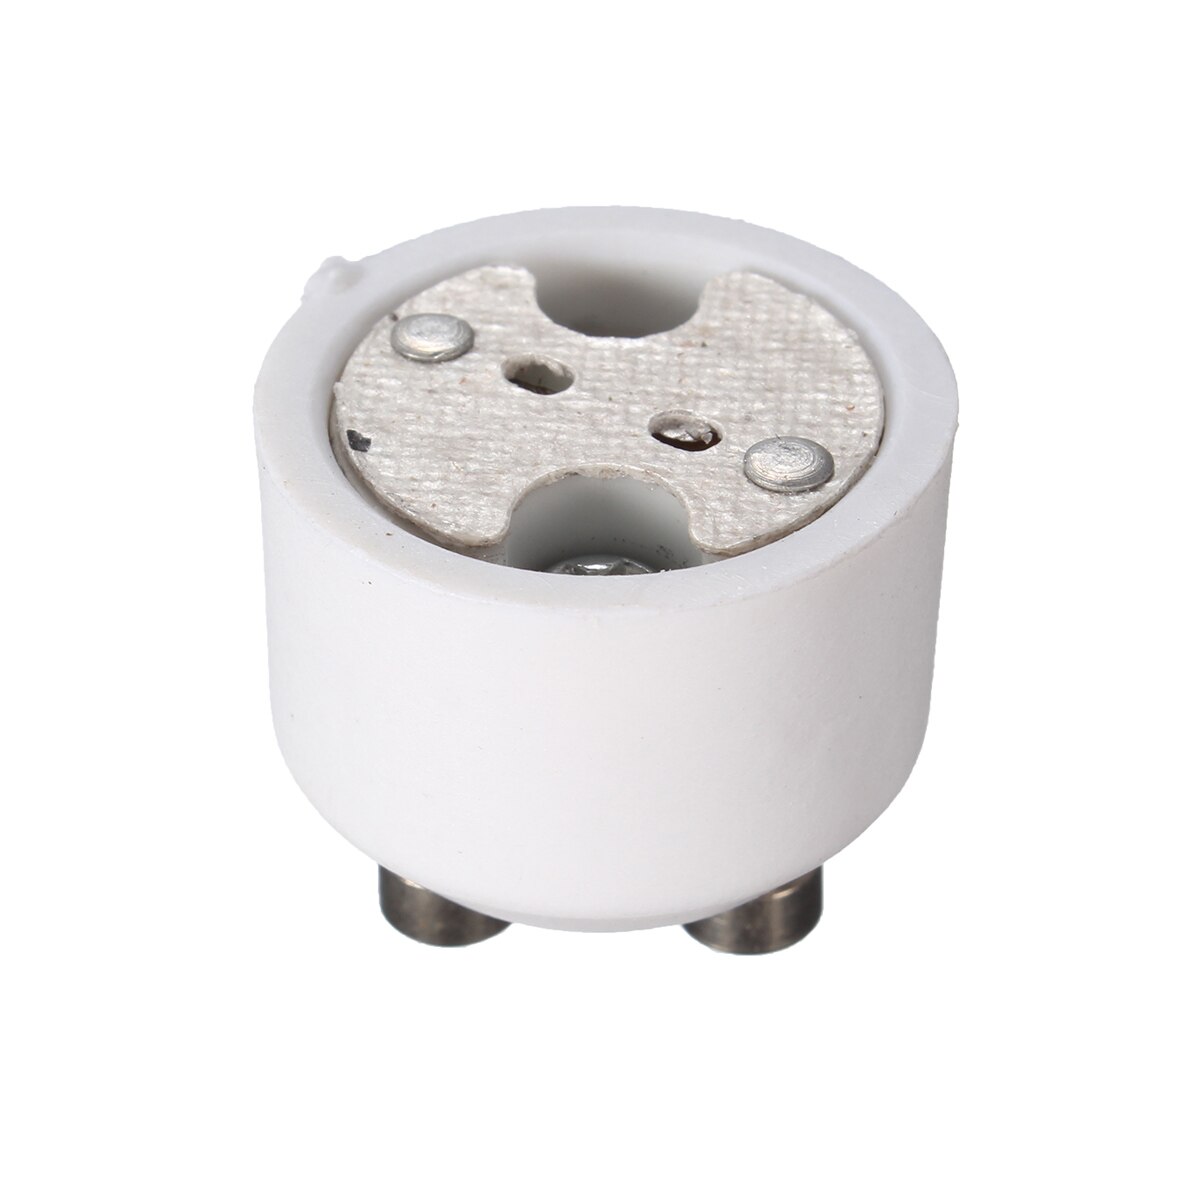 Gu10 to mr16 adapterstik base halogenpære lampe konverter holder lampeholder lampe baser